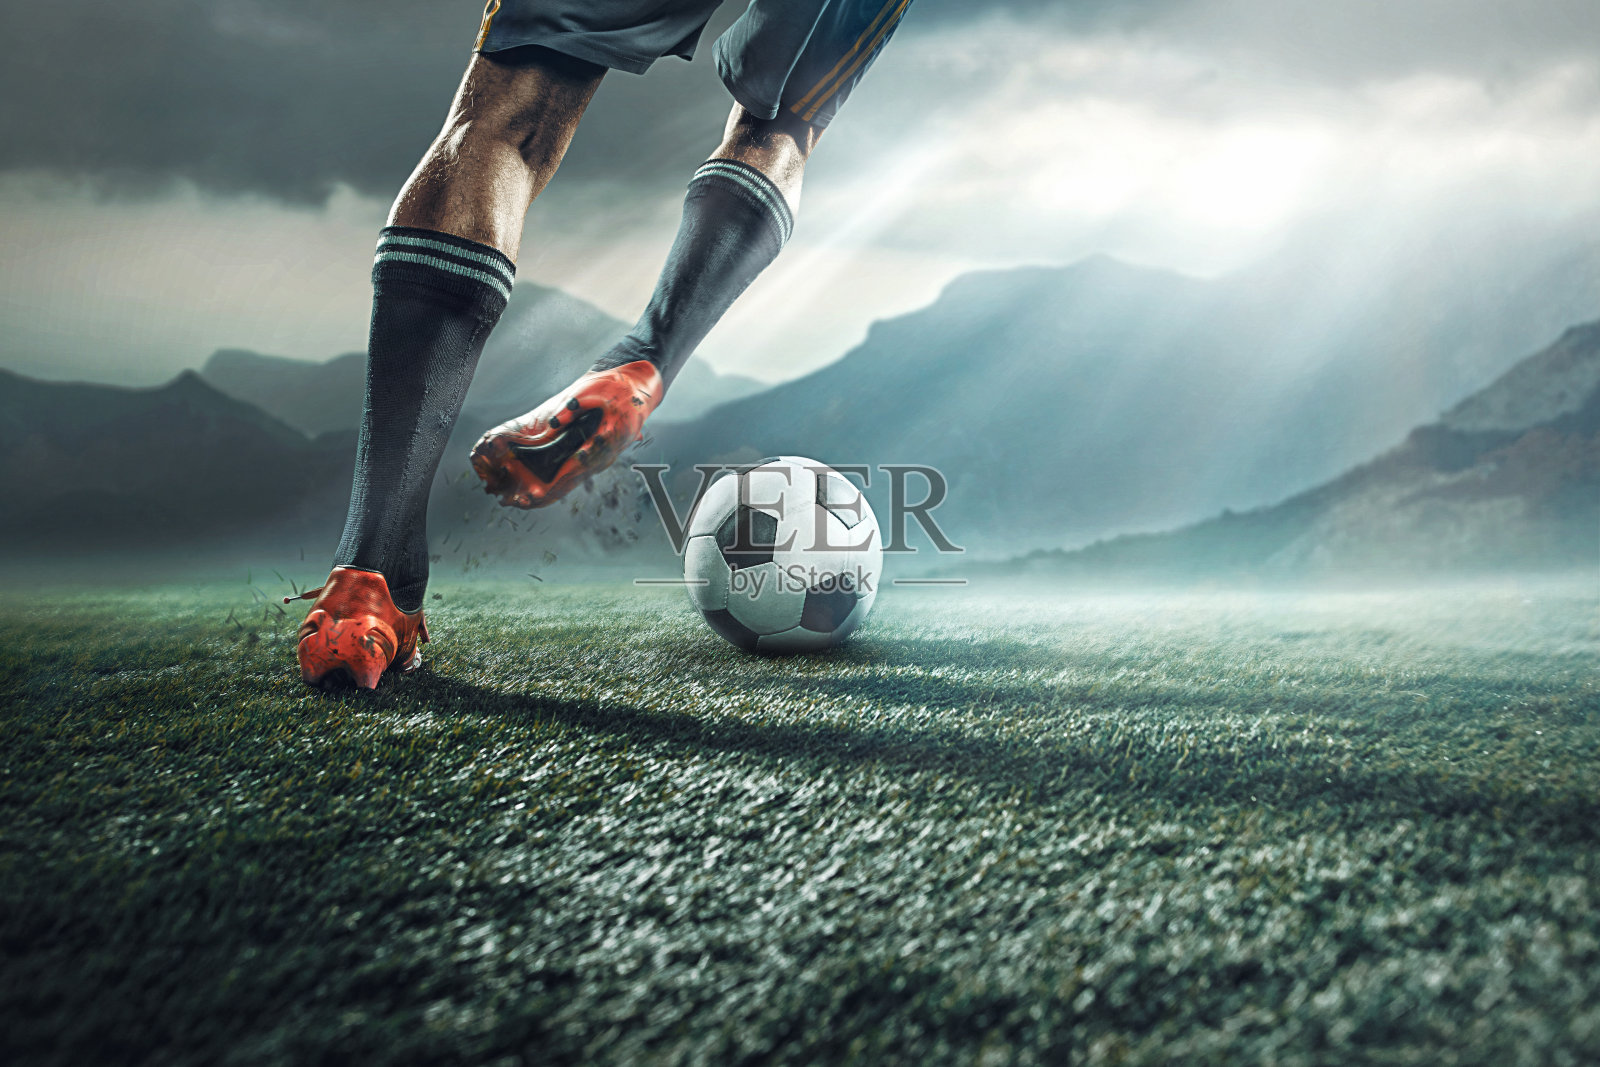 足球运动员踢球时的腿照片摄影图片